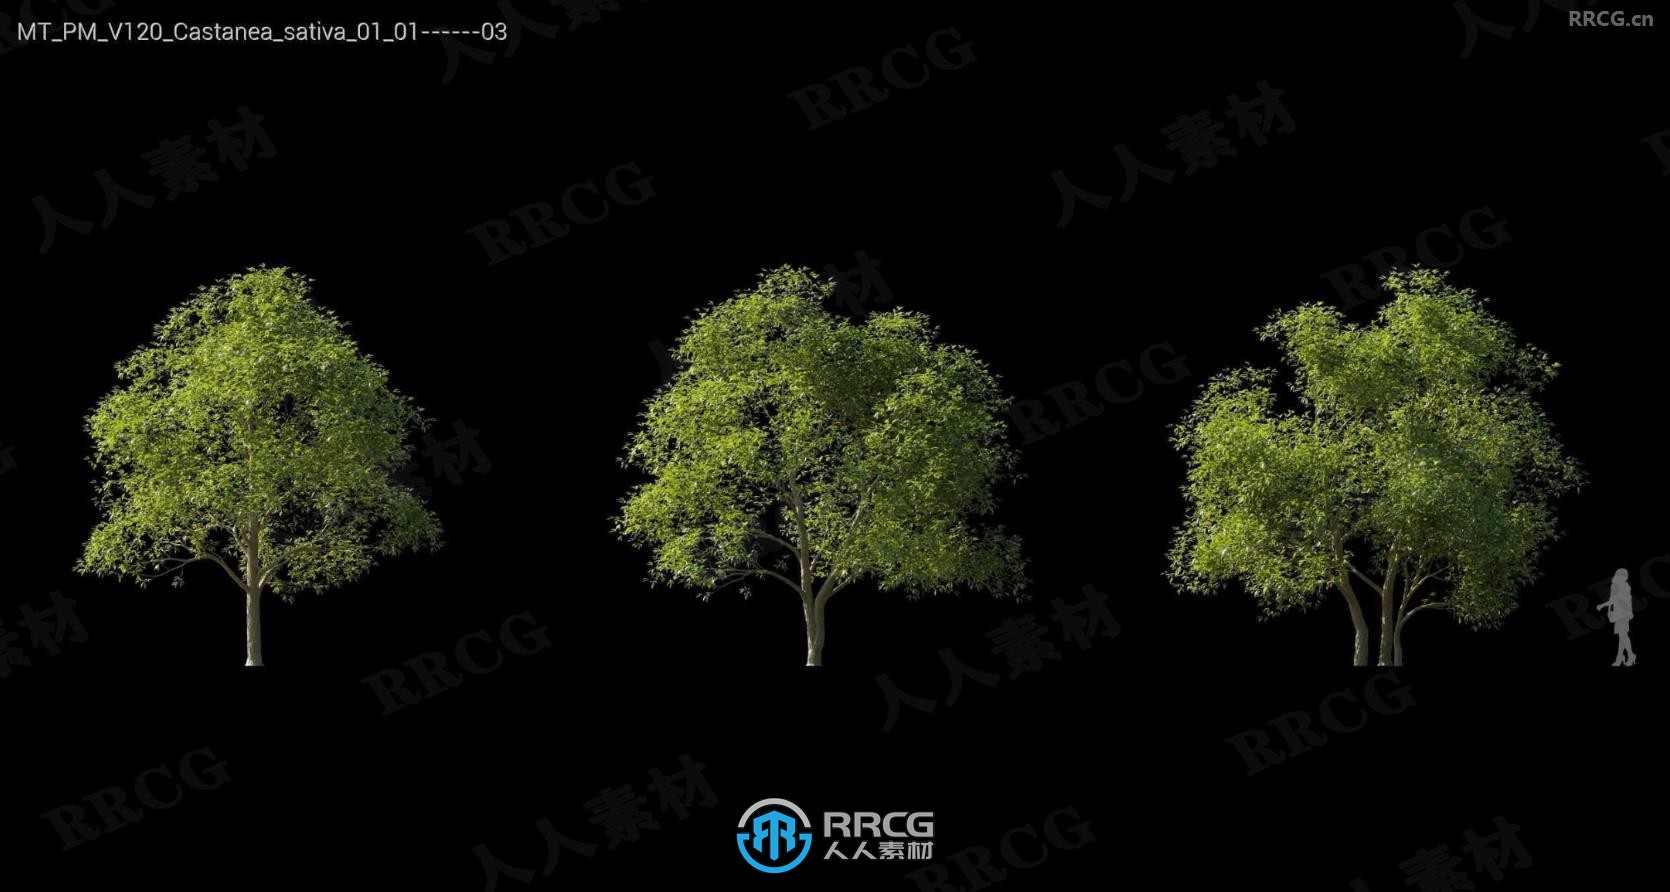 银冷杉瞻博树木格松比利牛斯橡树等树木植物3D模型合集